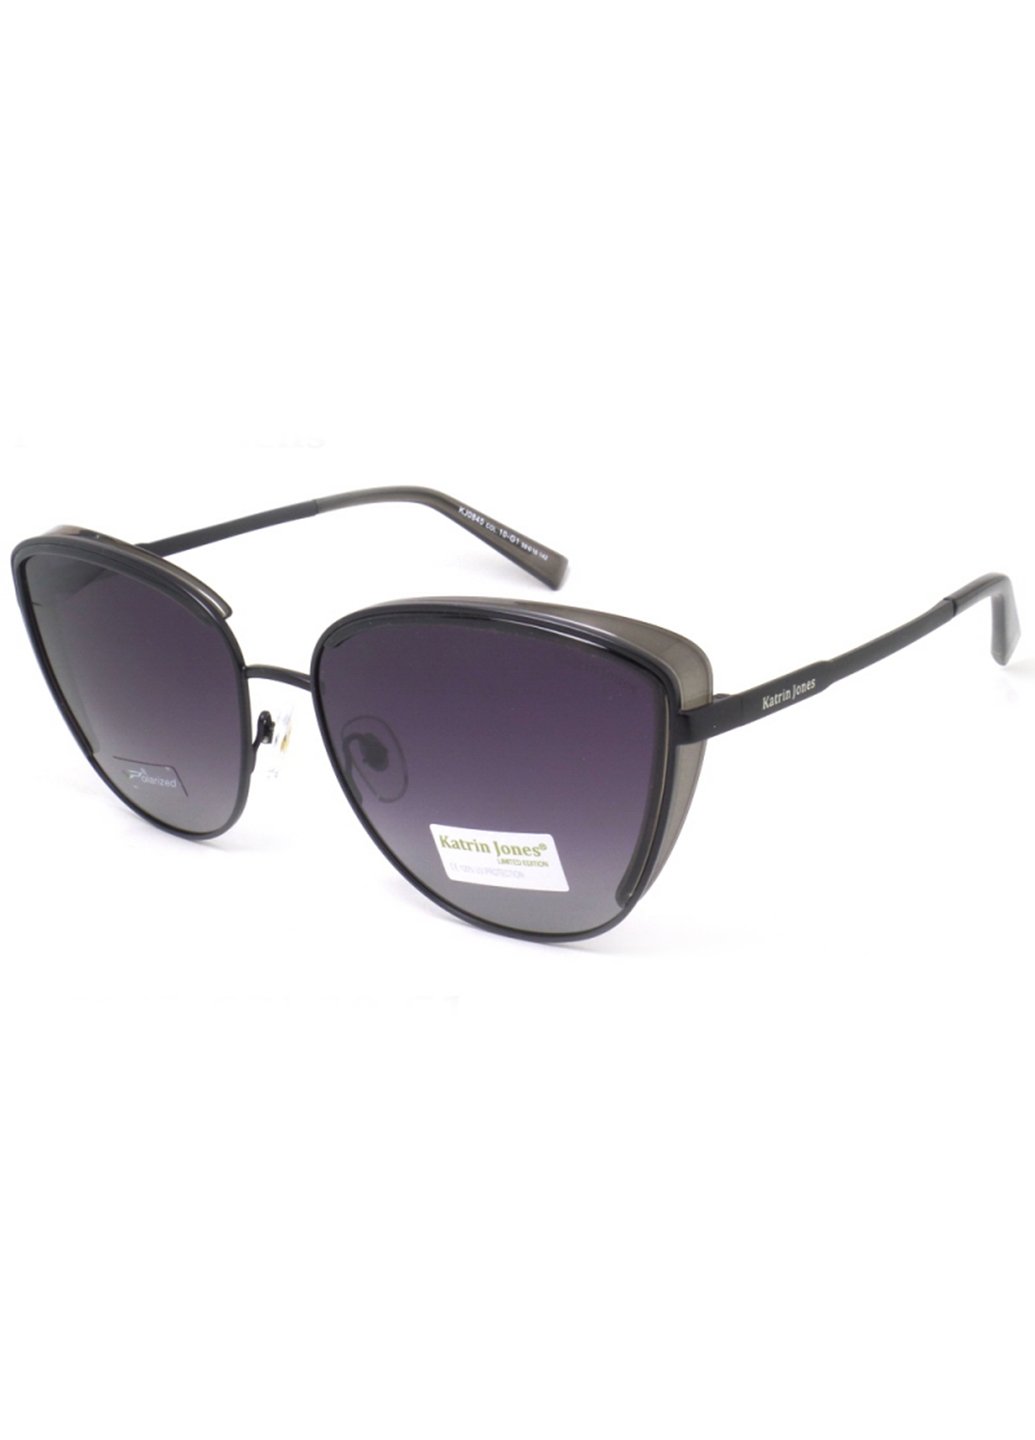 Купить Женские солнцезащитные очки Katrin Jones с поляризацией KJ0845 180017 - Черный в интернет-магазине